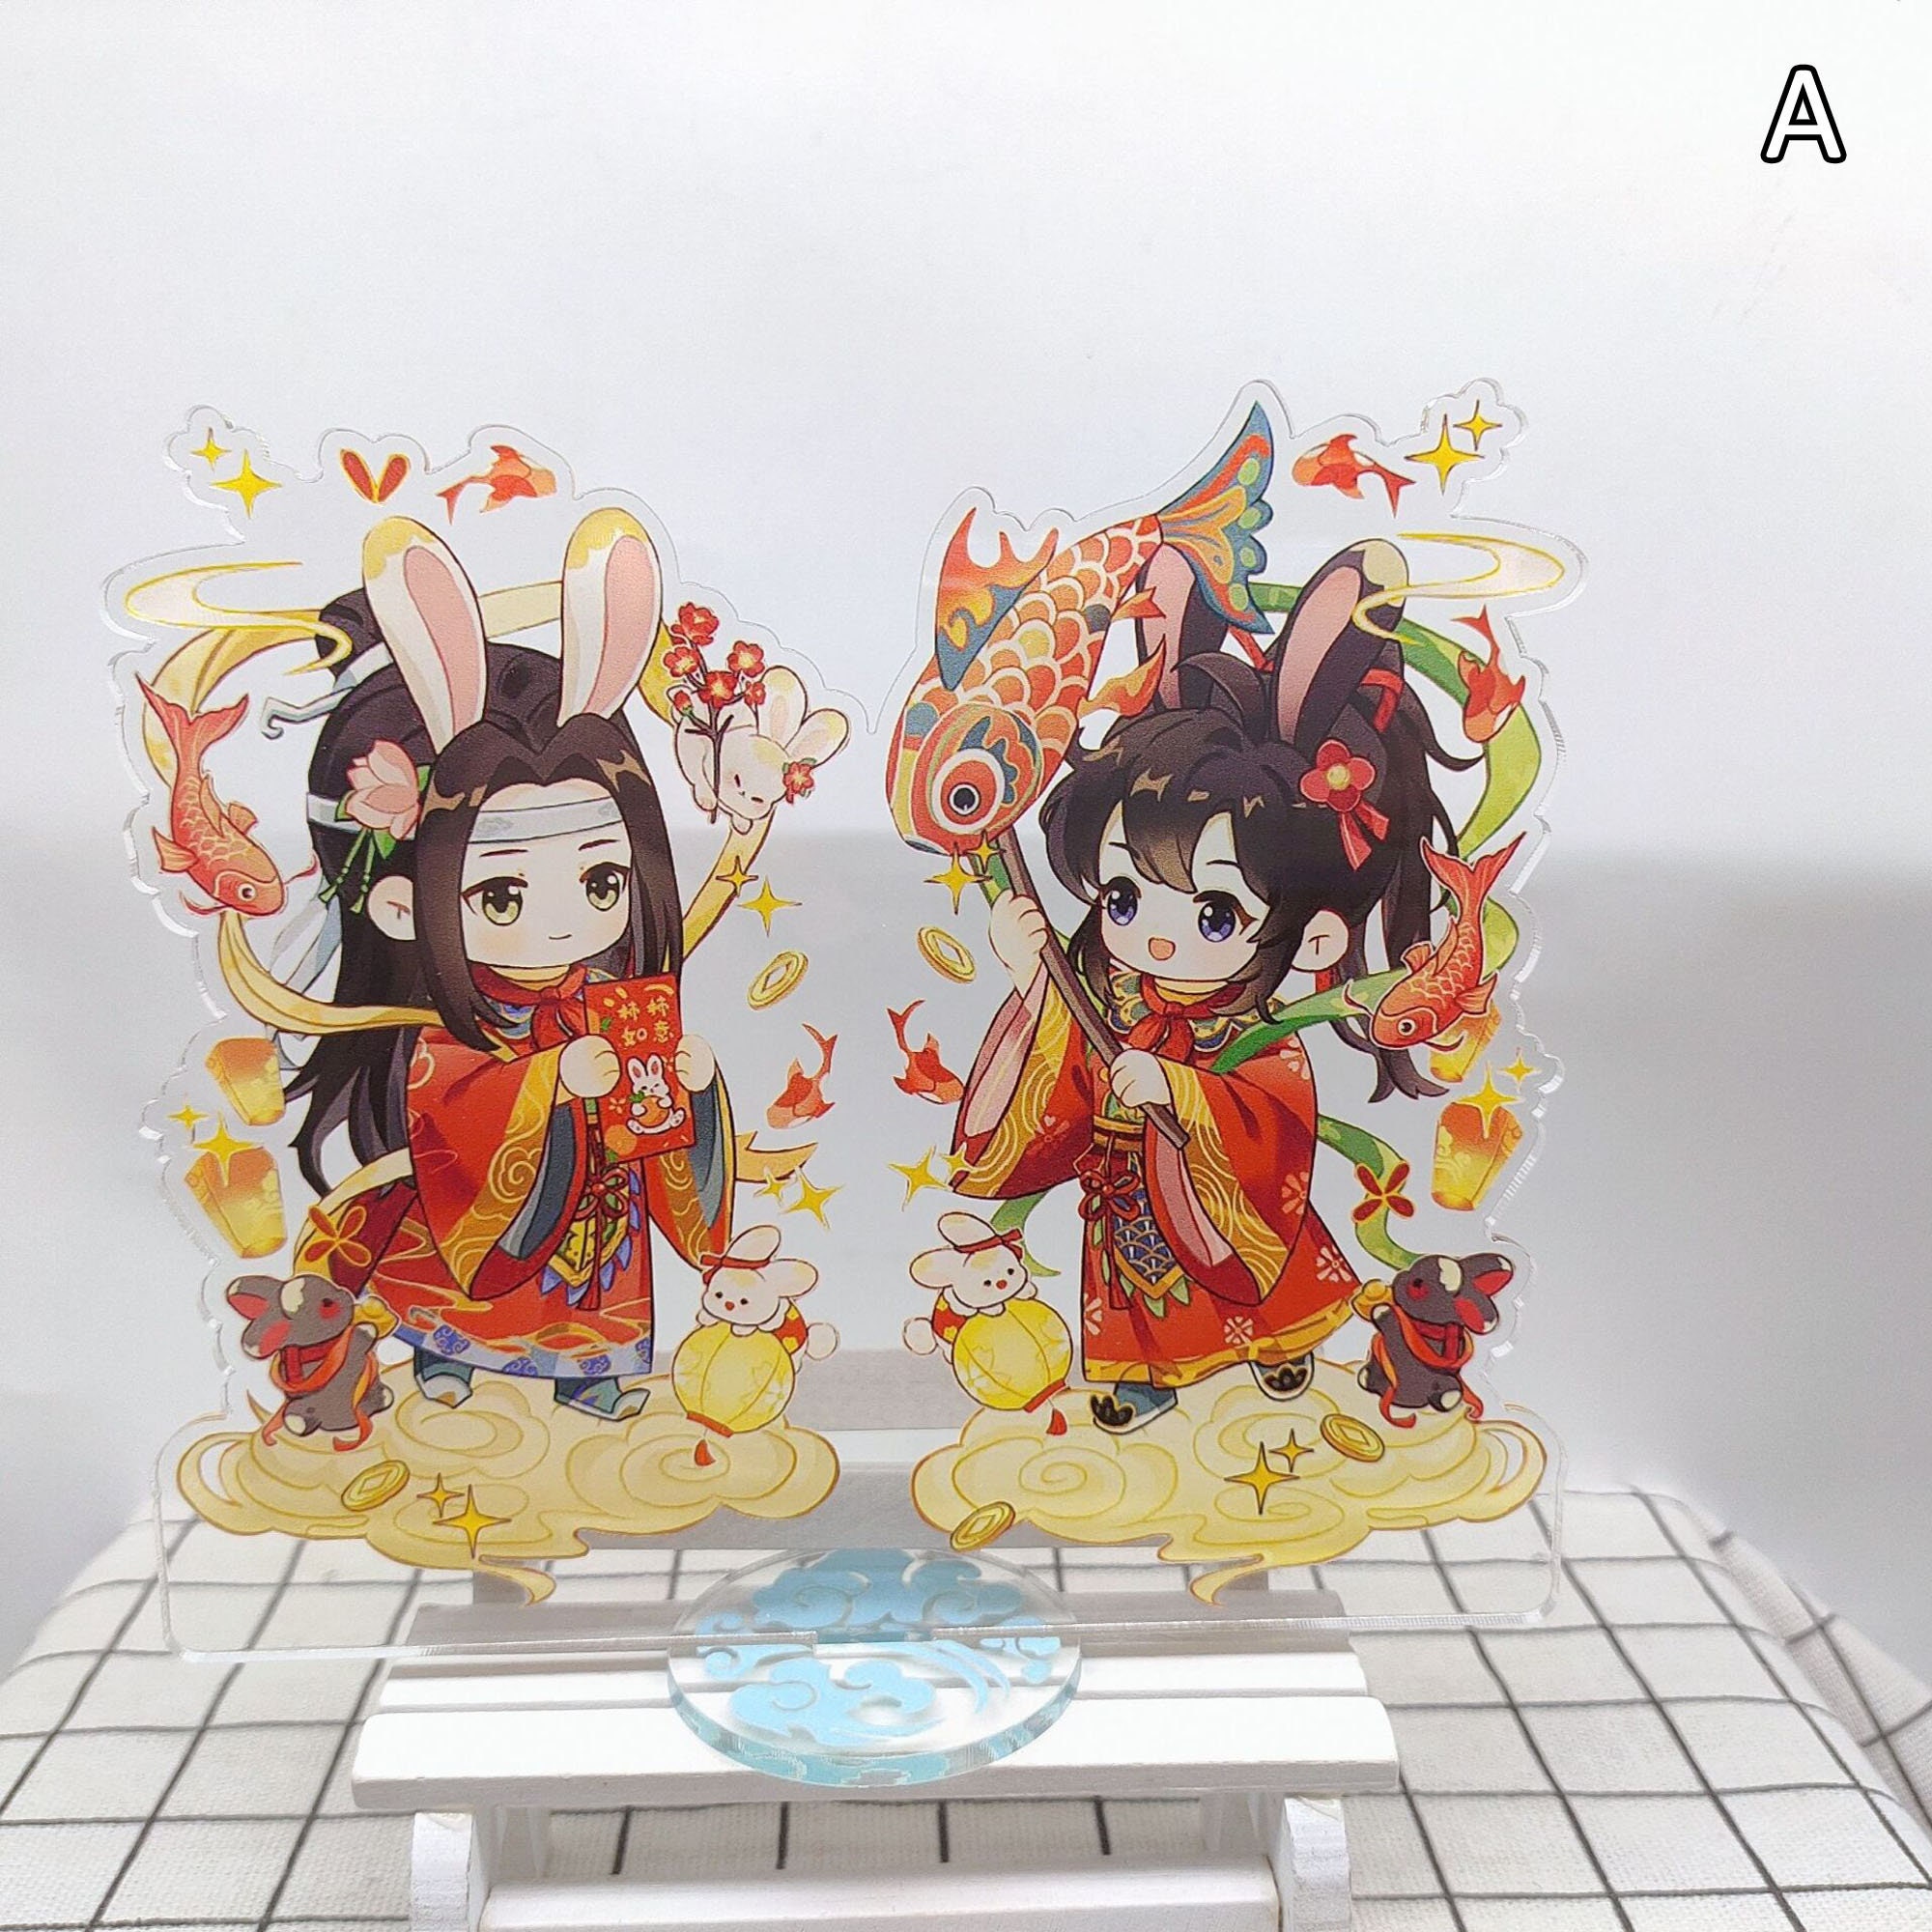 Anime Cartoon Acrylic Model Stands Figure Model Toys - Mo Dao Zu Shi, Lan  WangJi,Wei Wuxian, Grandmaster of Demonic, Fans Gift, 5.9'' I 